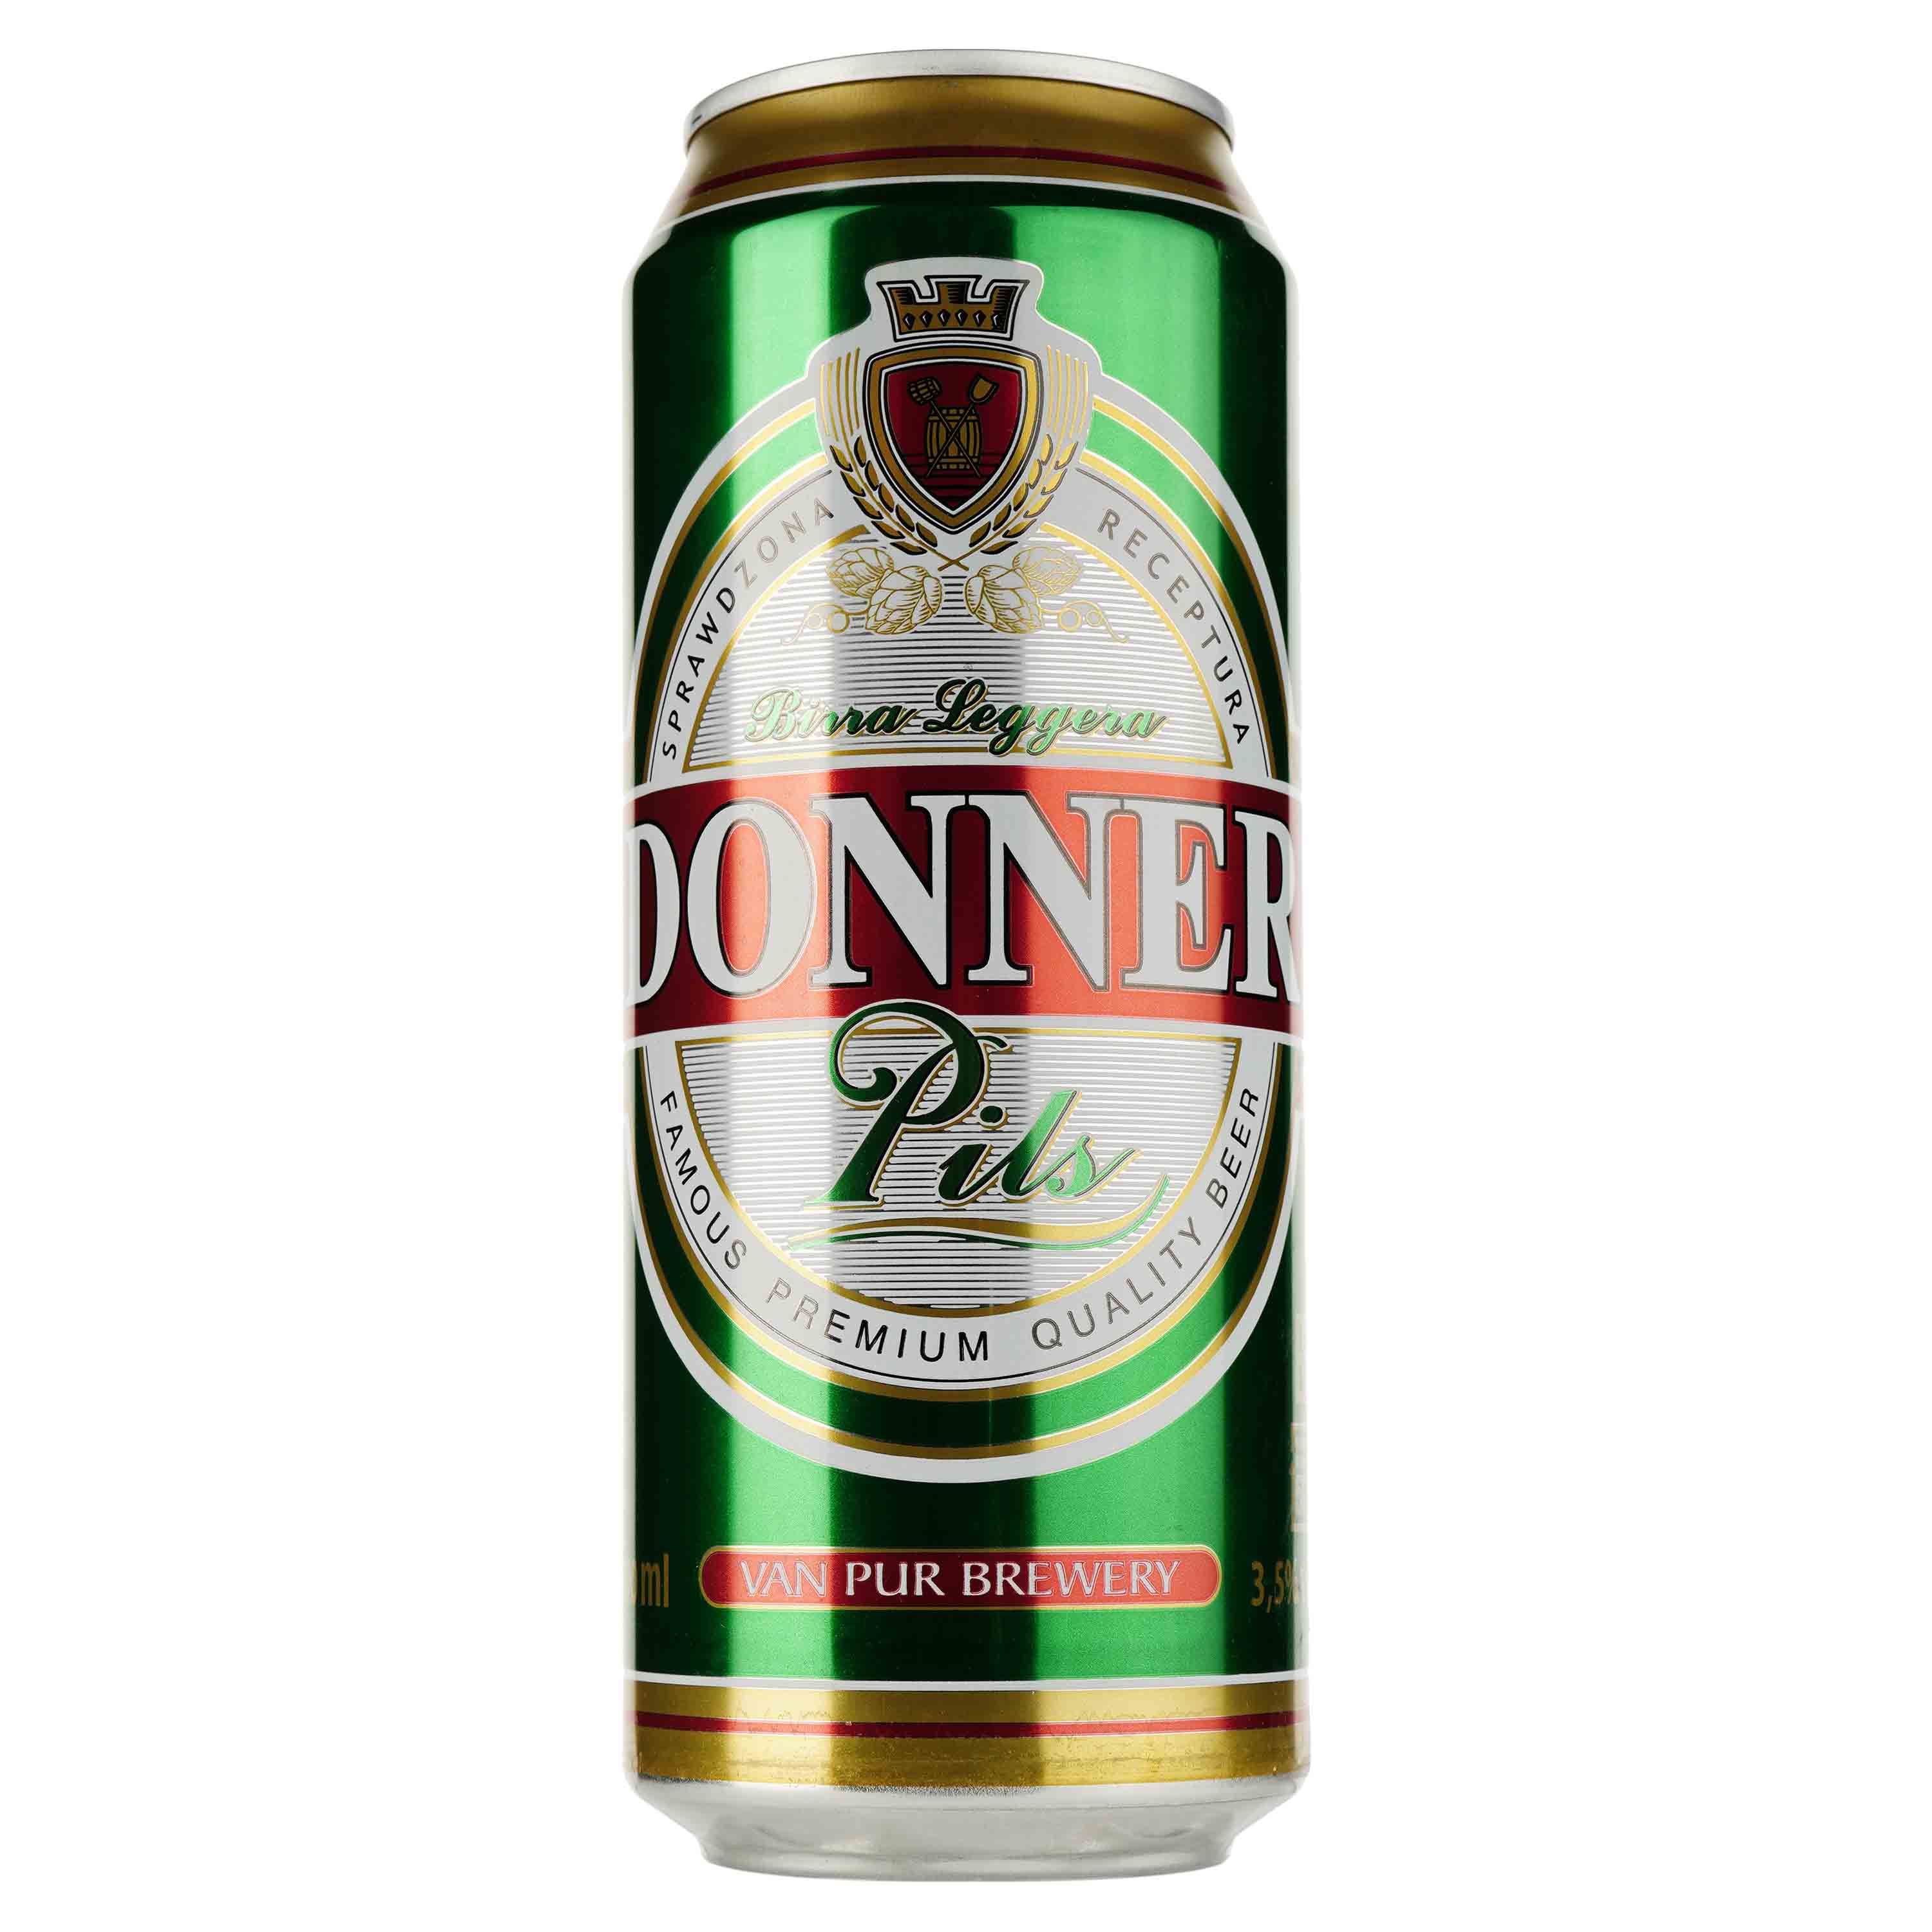 Пиво Donner Pils світле, 3.5%, з/б, 0.5 л - фото 1